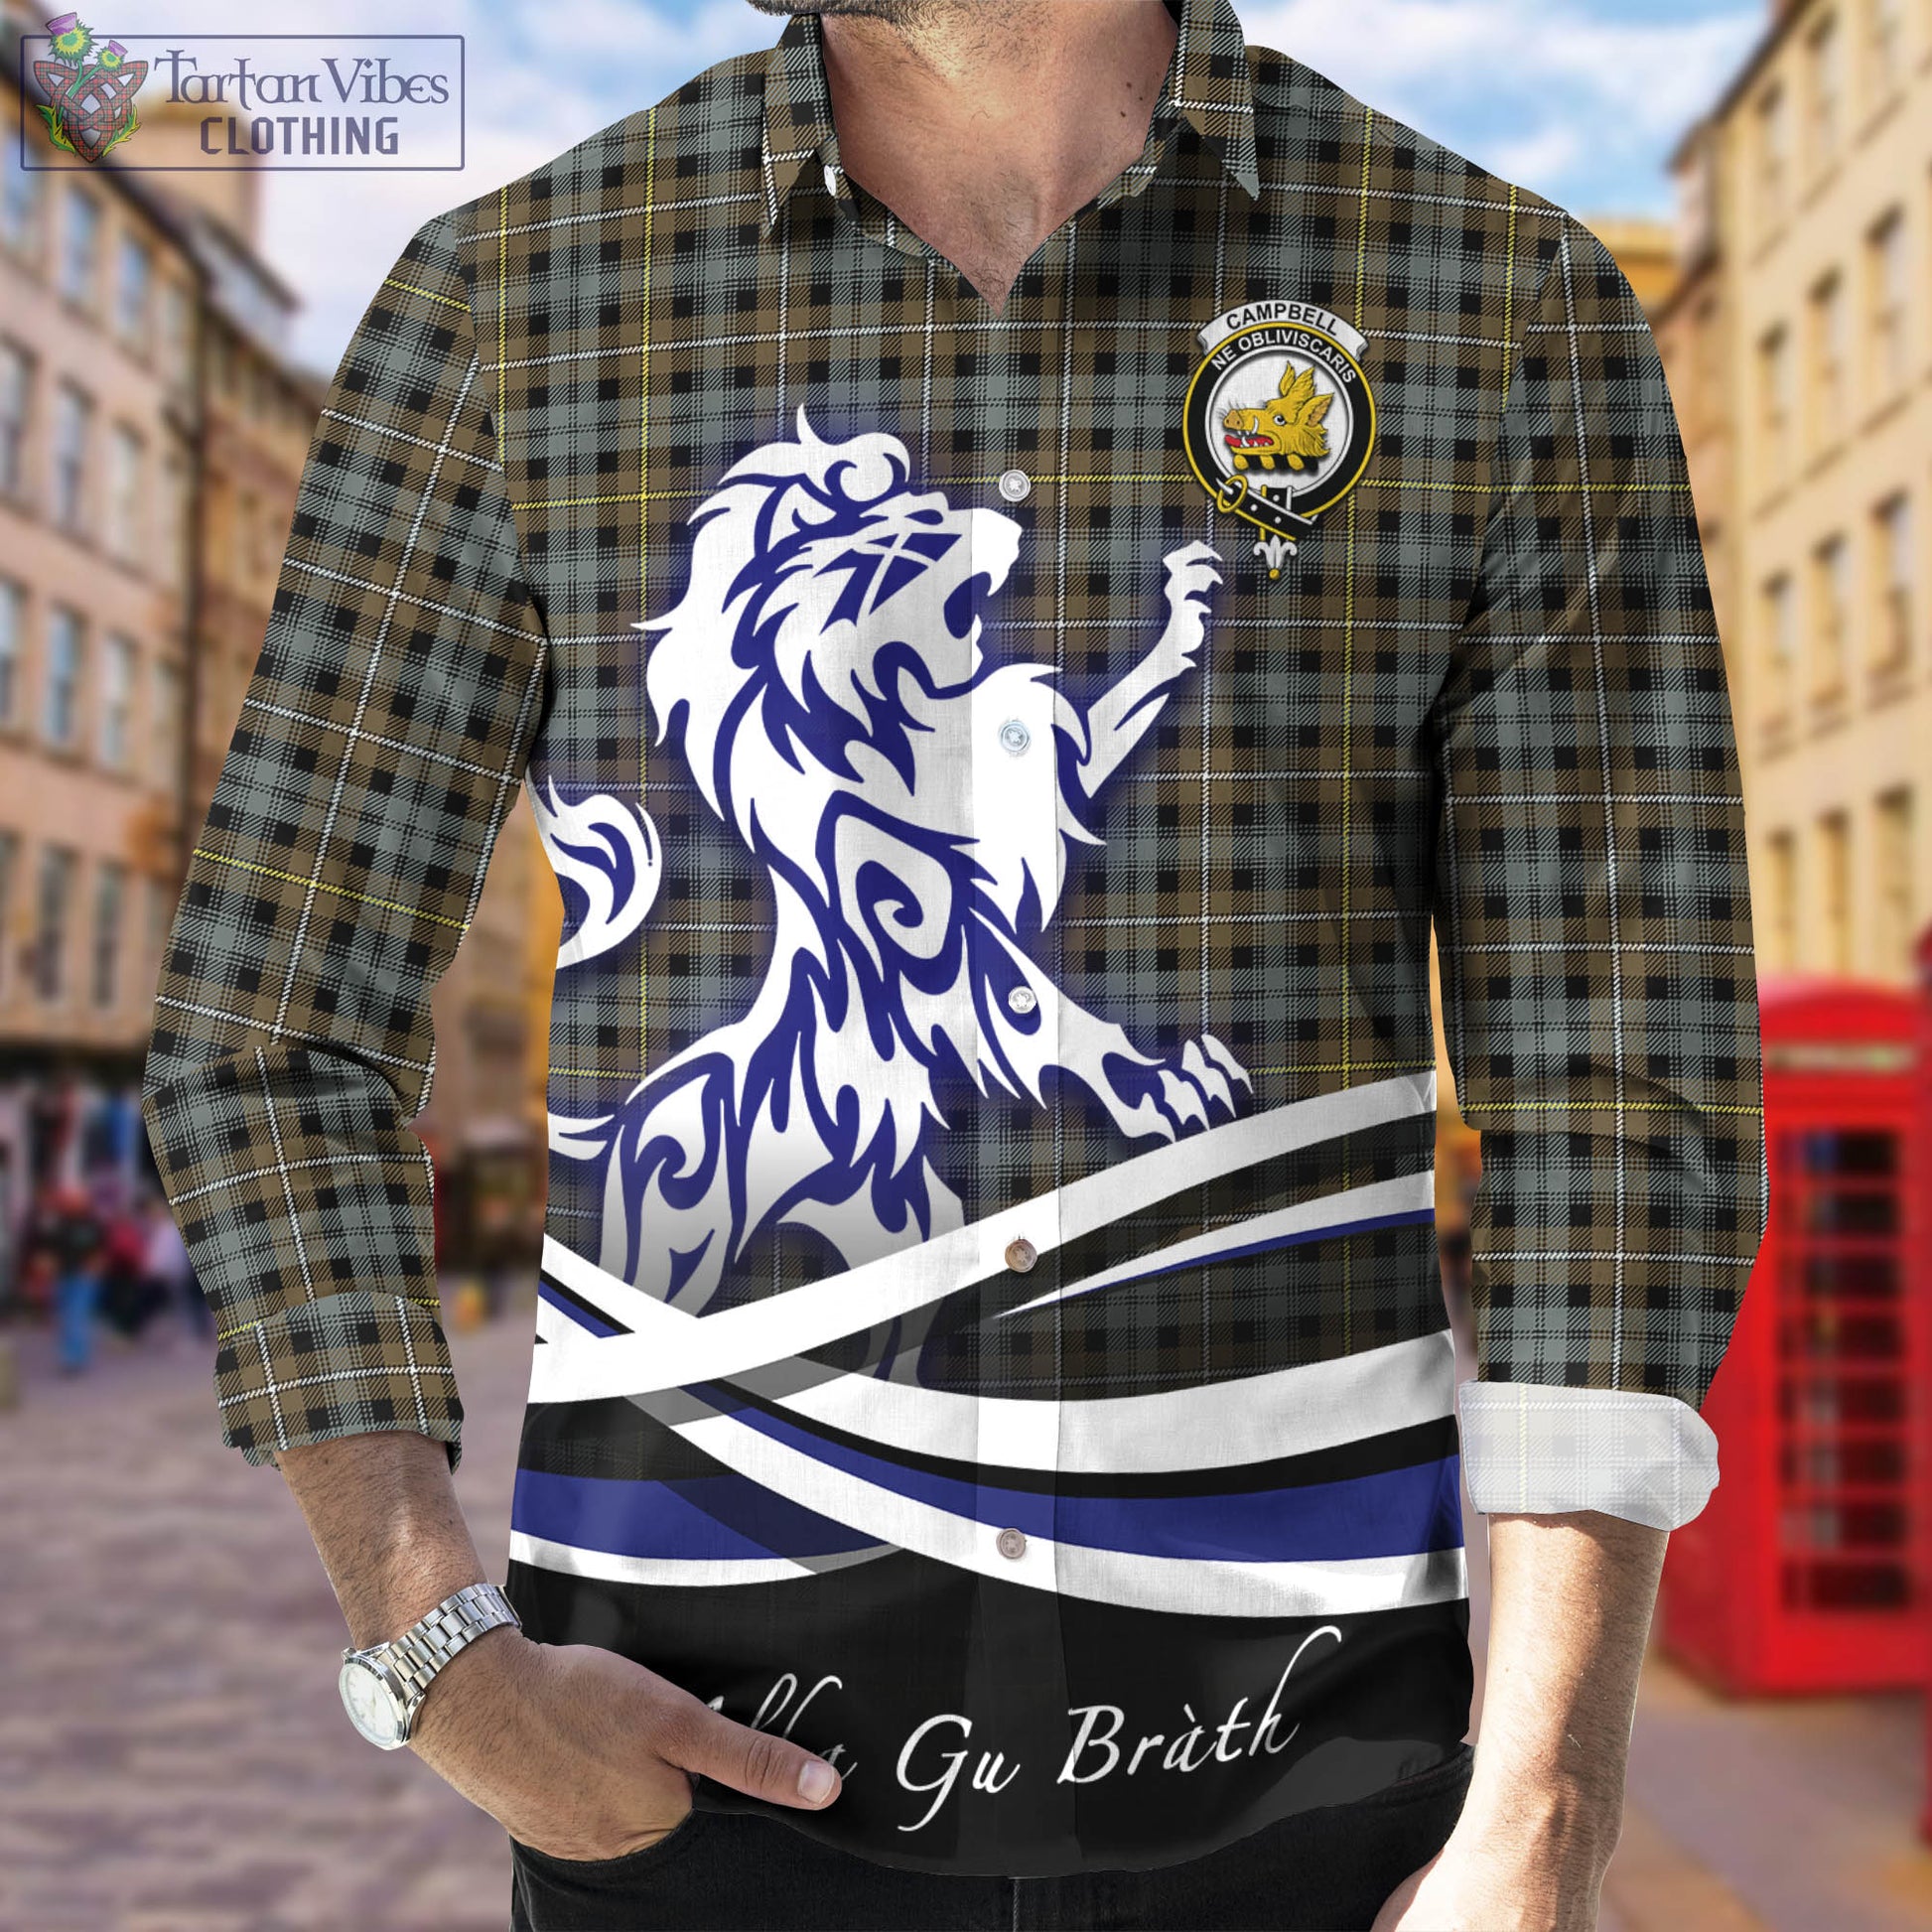 campbell-argyll-weathered-tartan-long-sleeve-button-up-shirt-with-alba-gu-brath-regal-lion-emblem